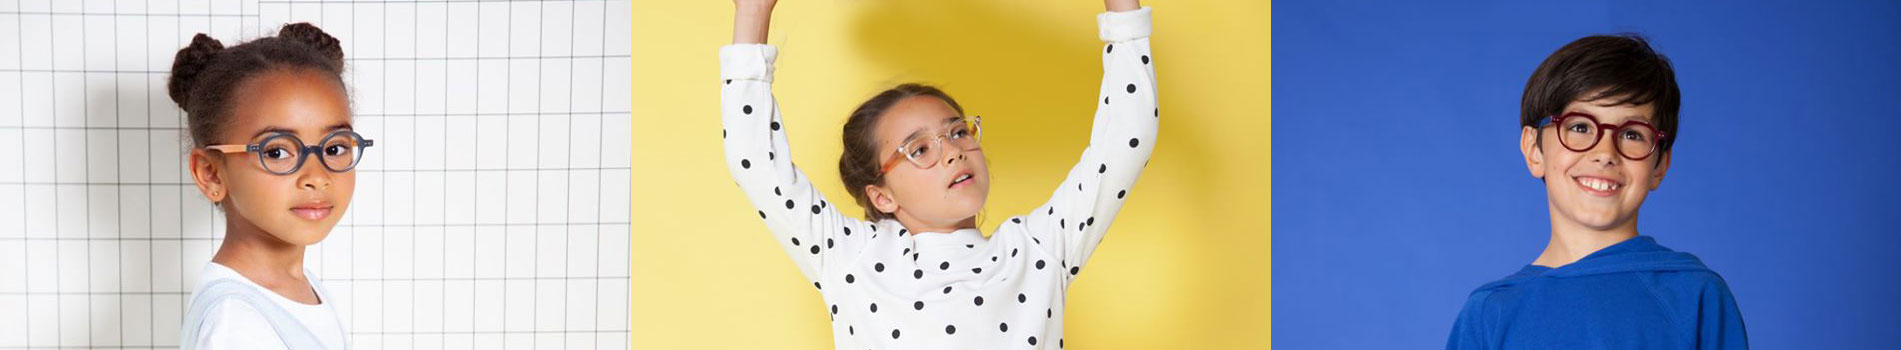 Onze “vetcoole” kinderbrillencollectie is speciaal samengesteld voor onze jonge klanten.